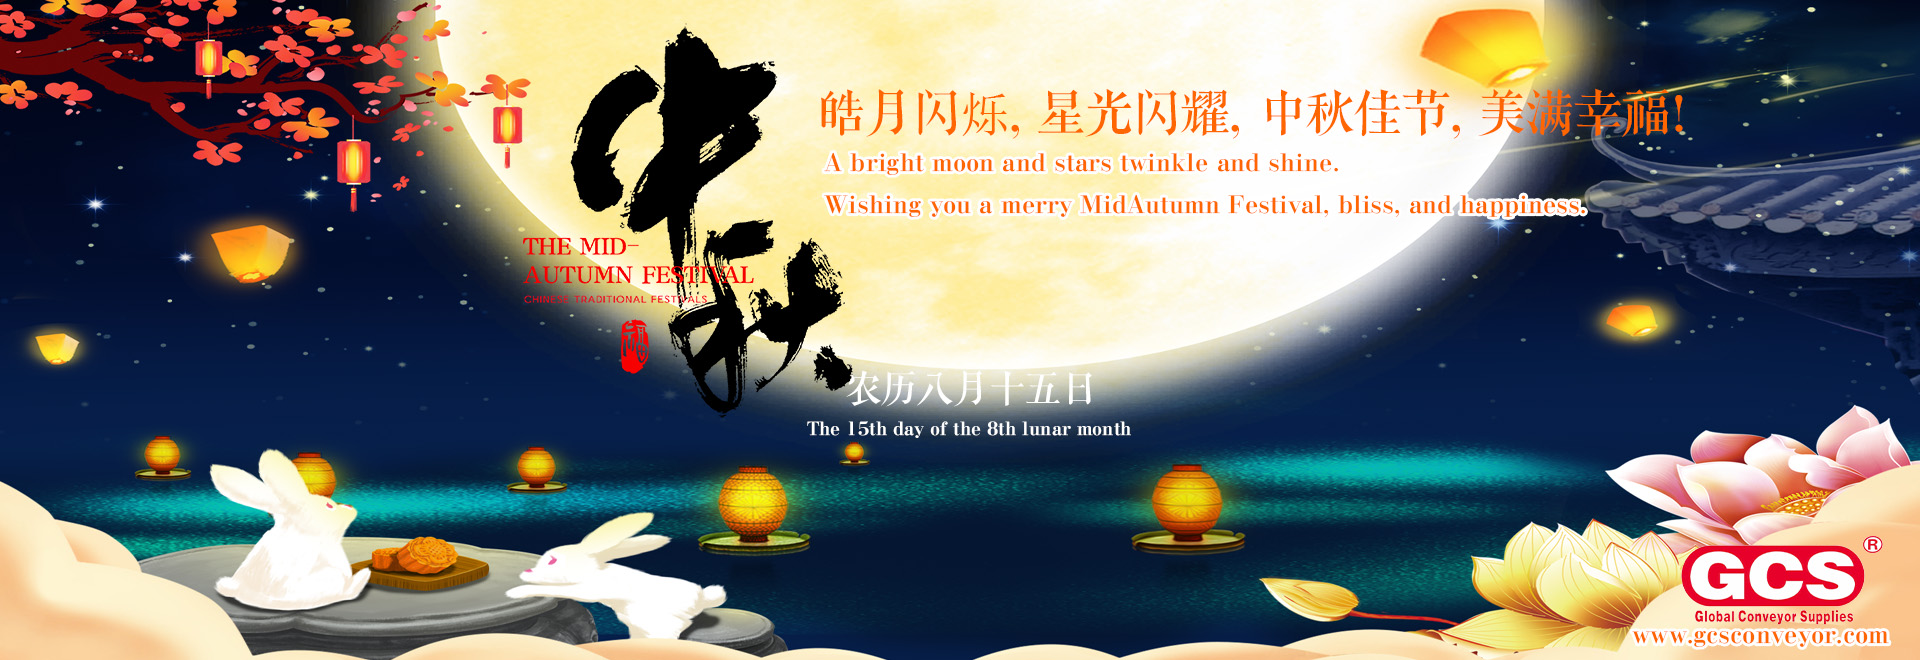 פסטיבלים סיניים מסורתיים - הודעת חג פסטיבל אמצע הסתיו עבור GCS